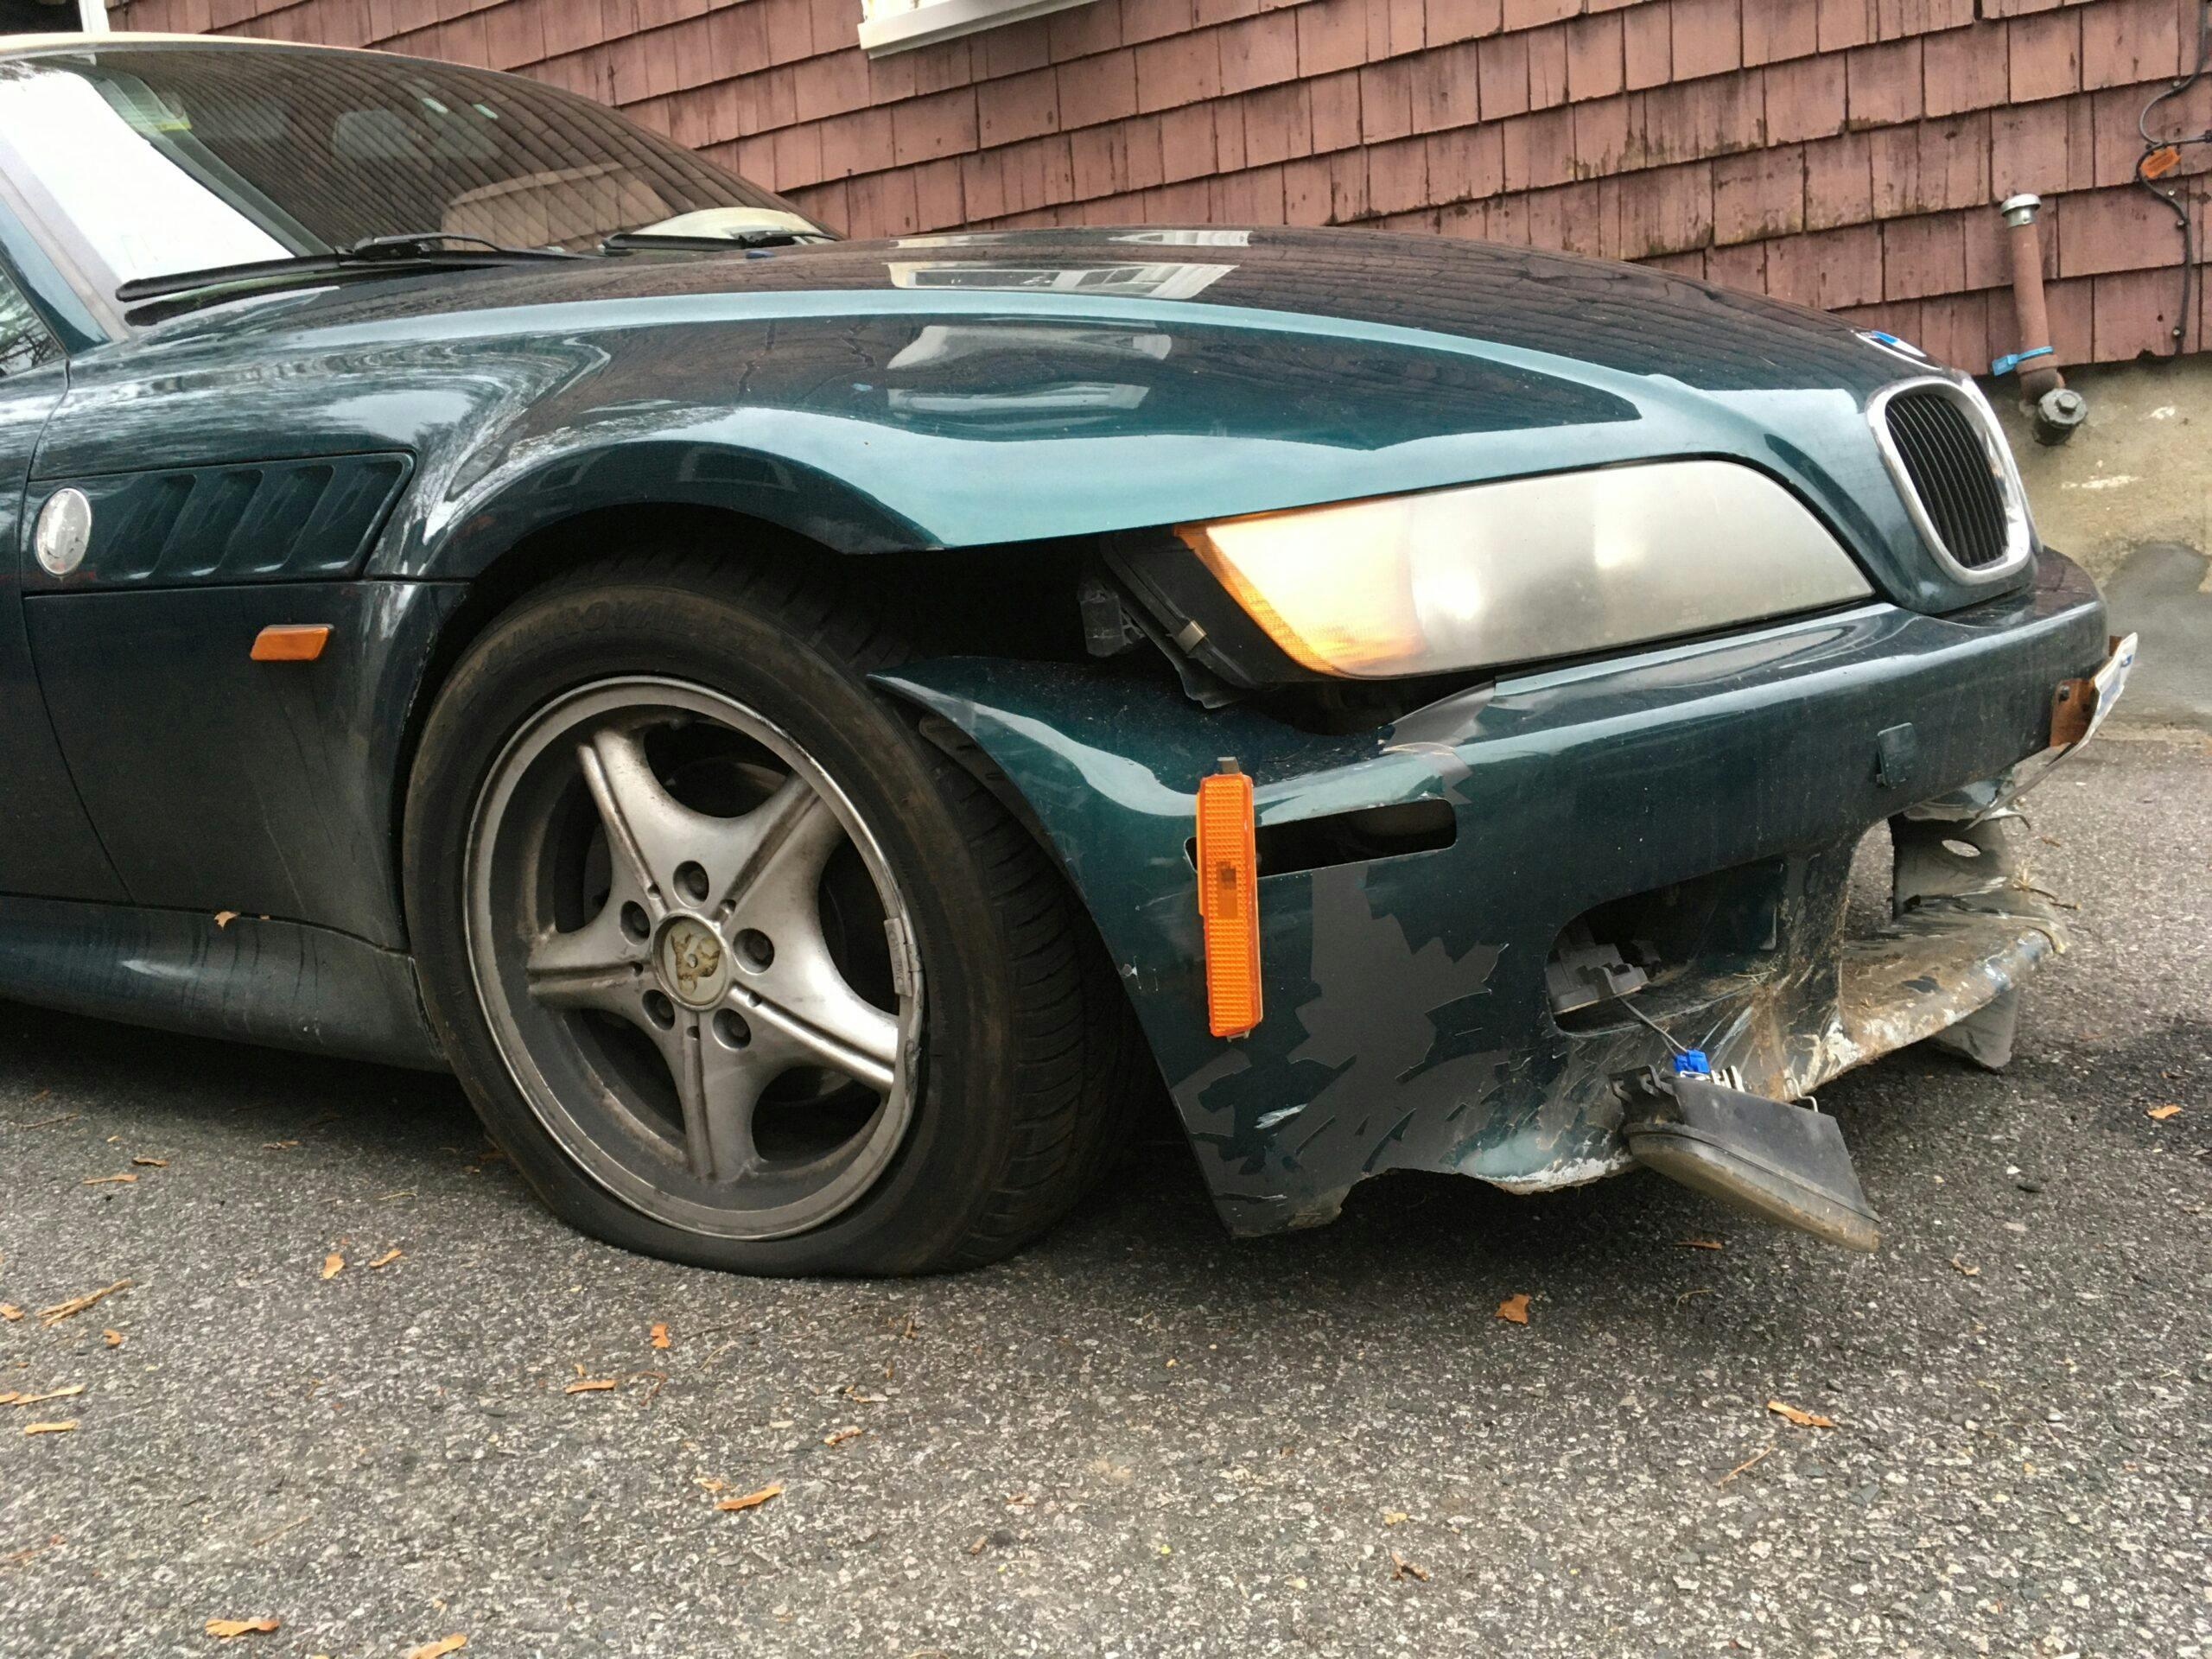 BMW front end damage